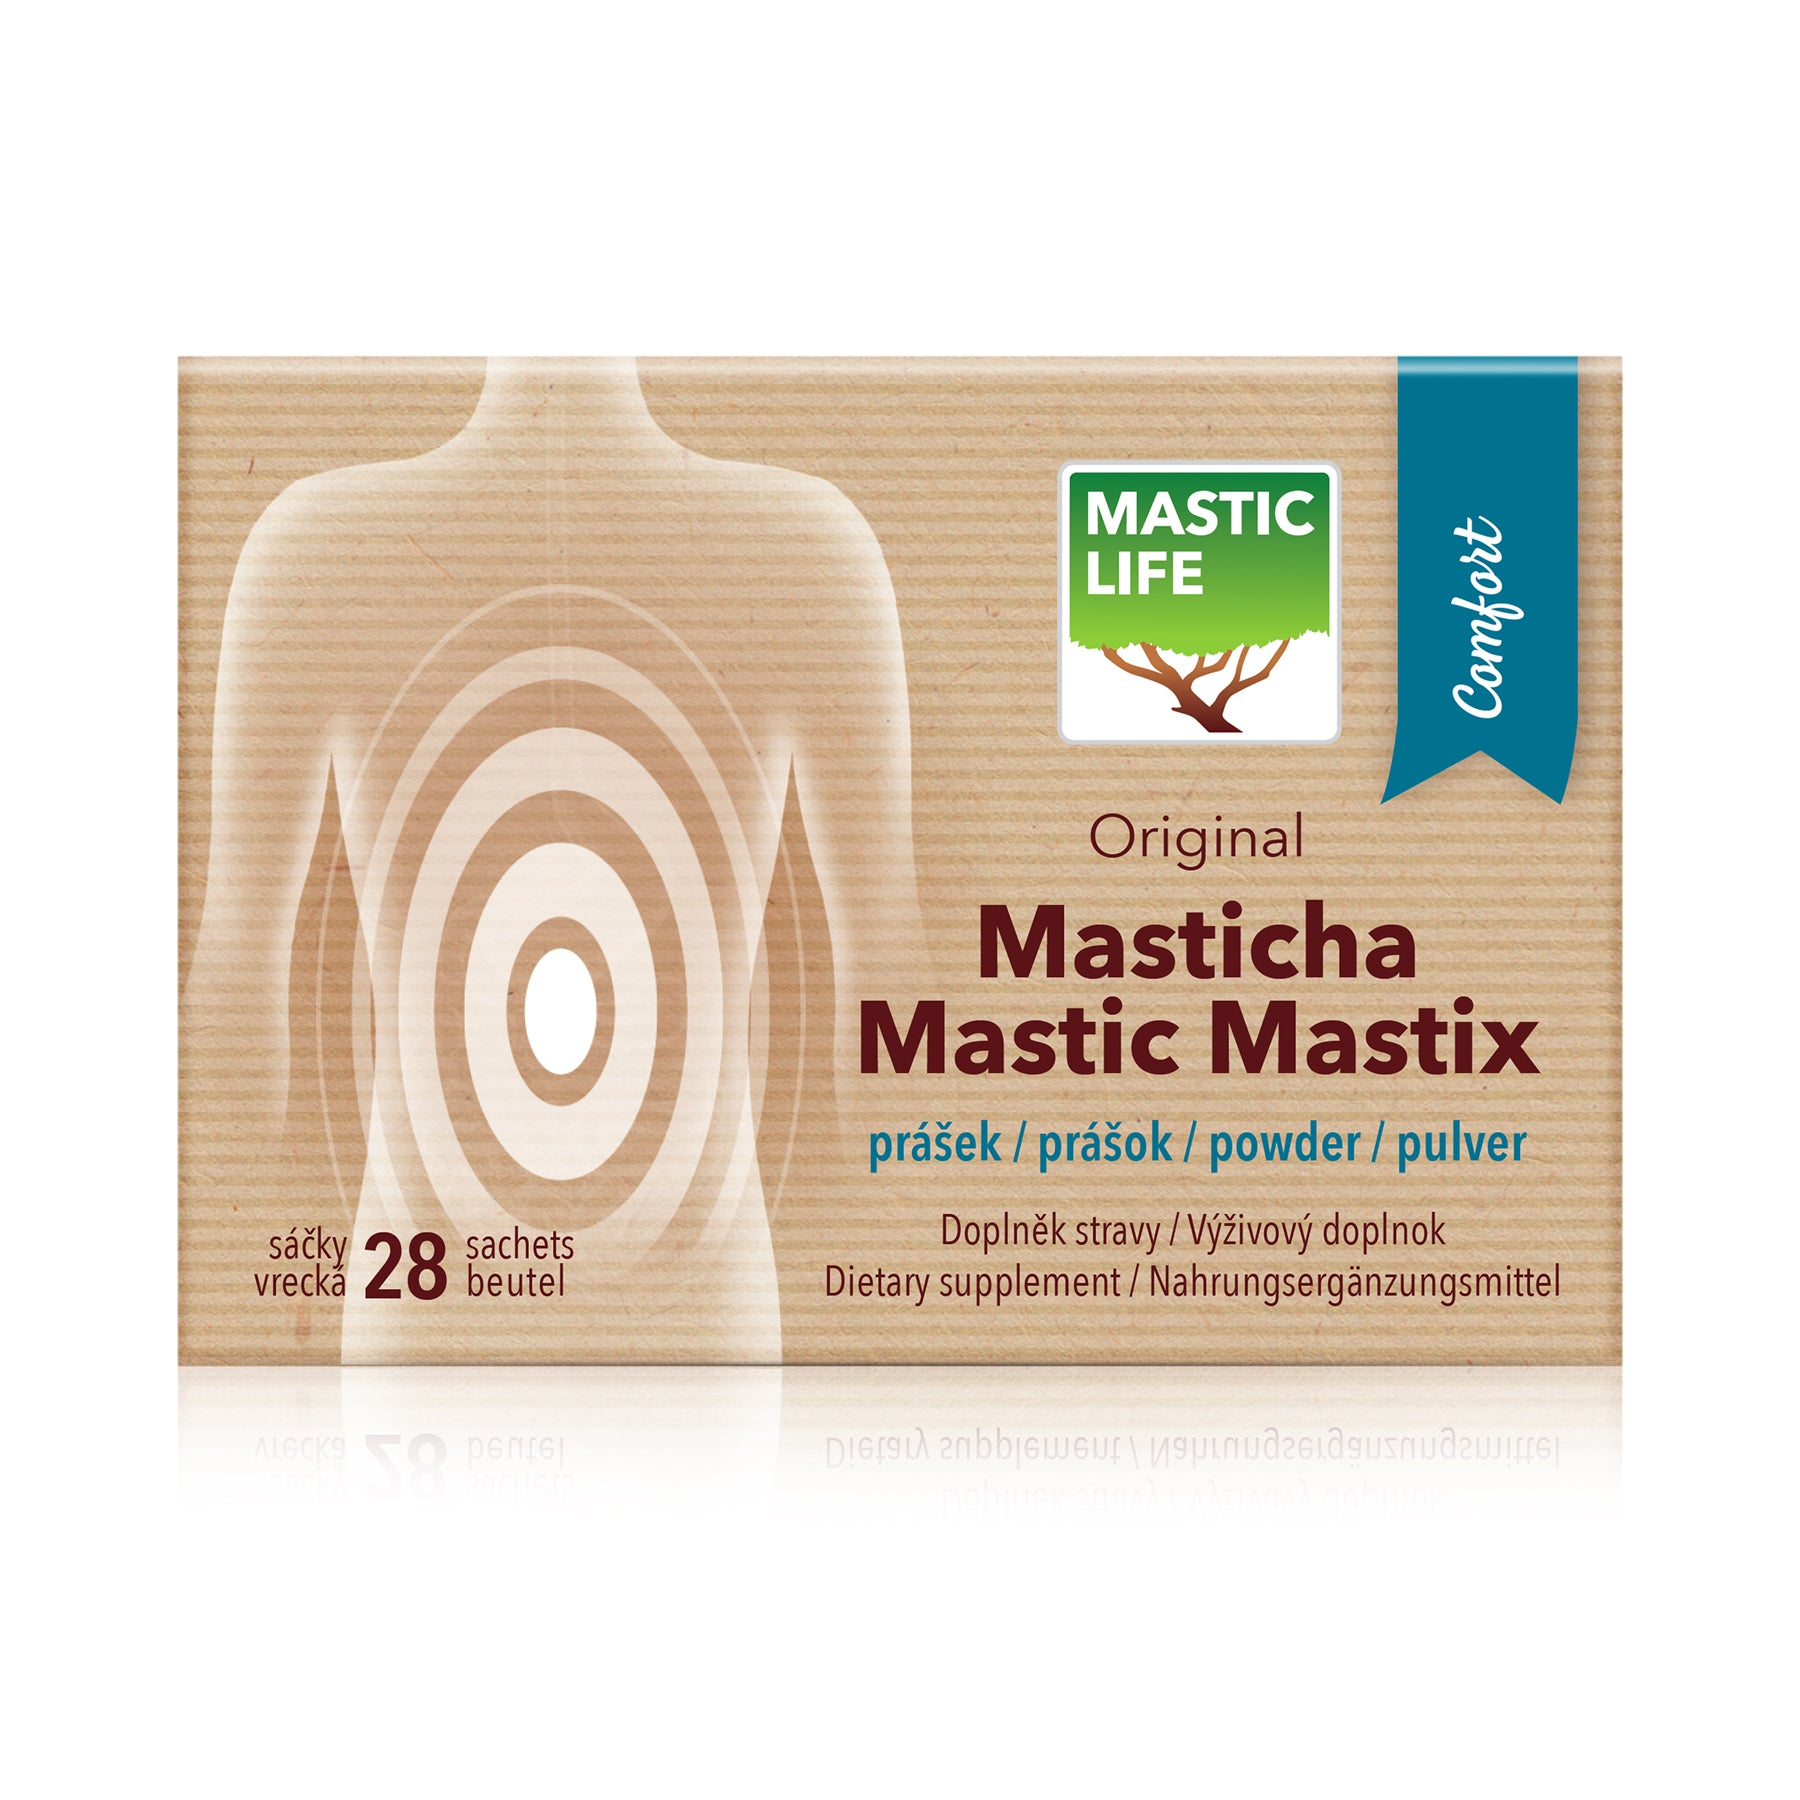 Mastix Comfort (28 Beutel) Masticlife